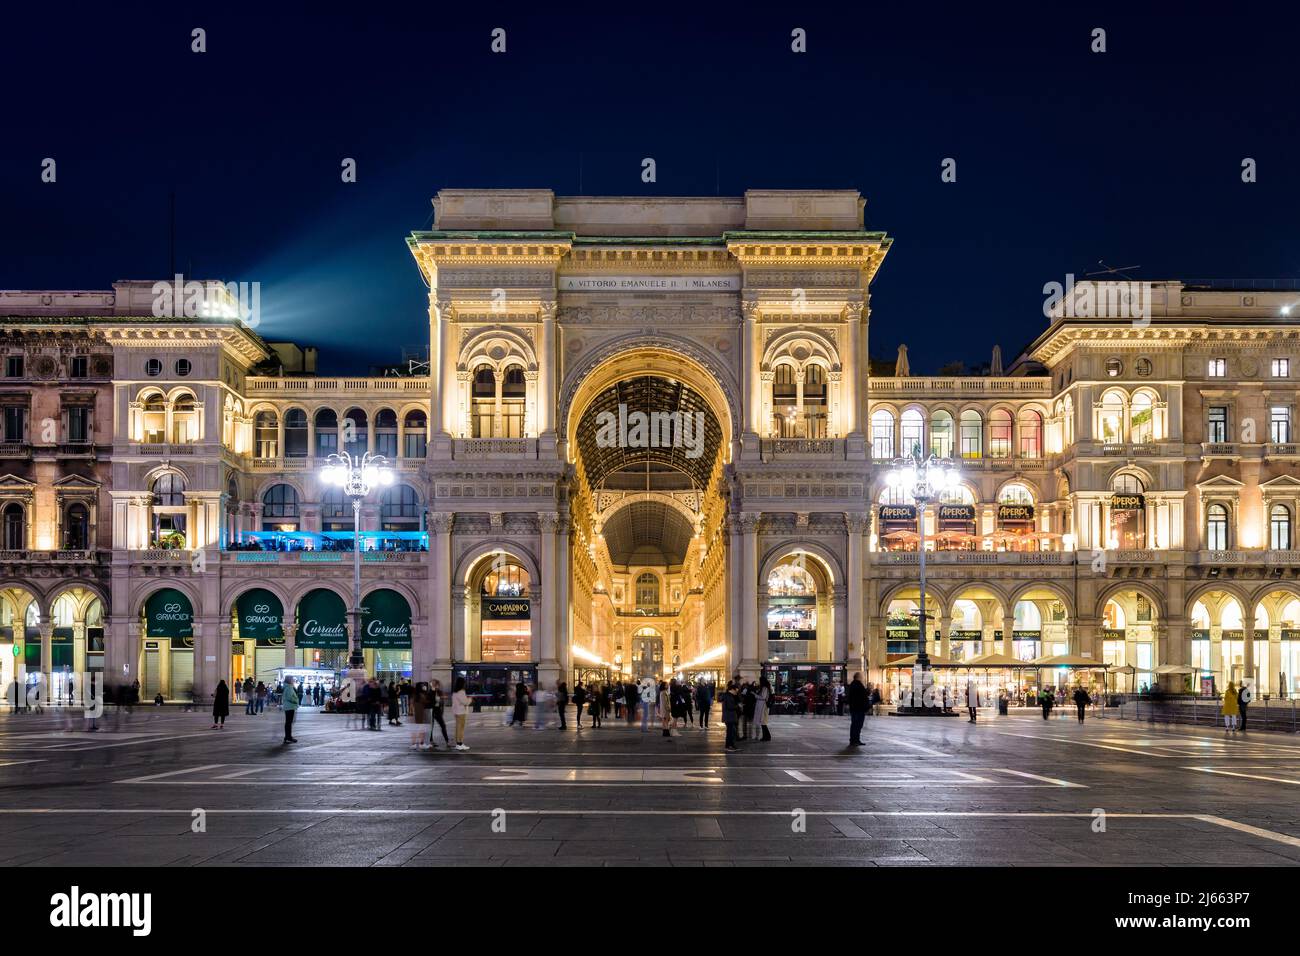 Vista frontal de la entrada del arco triunfal de la Galería Vittorio Emanuele II, centro comercial acristalado en la Piazza del Duomo por la noche en Milán, Italia Foto de stock